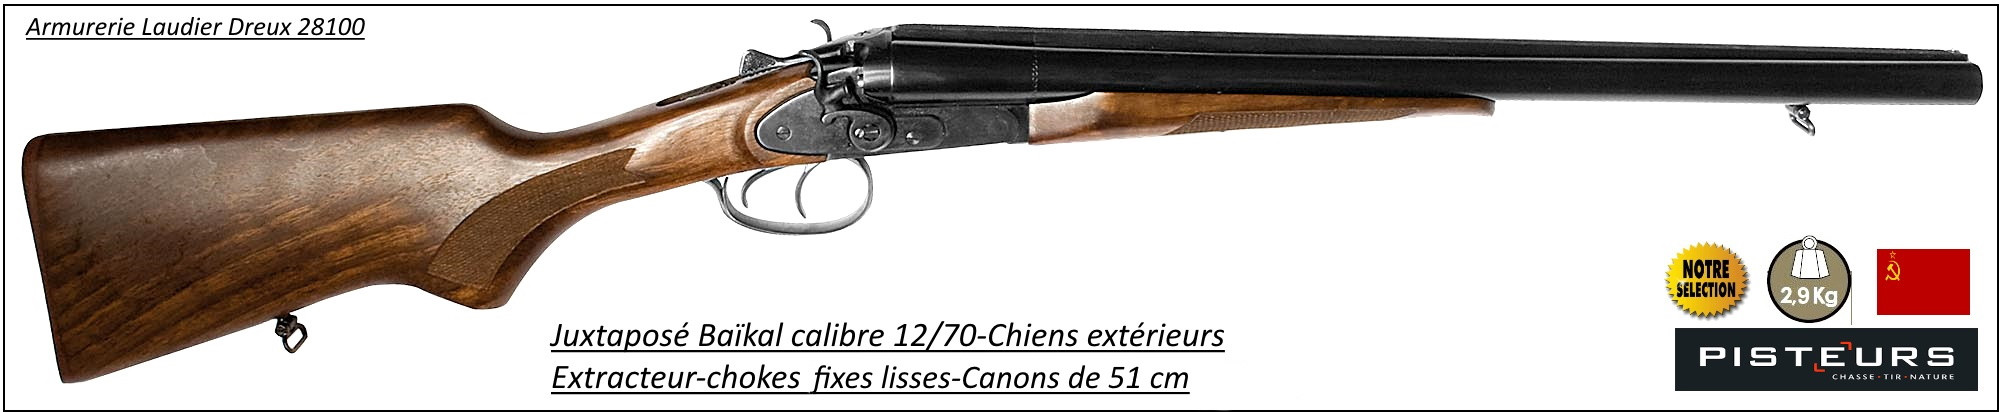 Juxtaposé Baïkal Coach Gun CHIENS EXTERIEURS Calibre12/70 Canons 51 cm-Extracteurs-Ref 11826